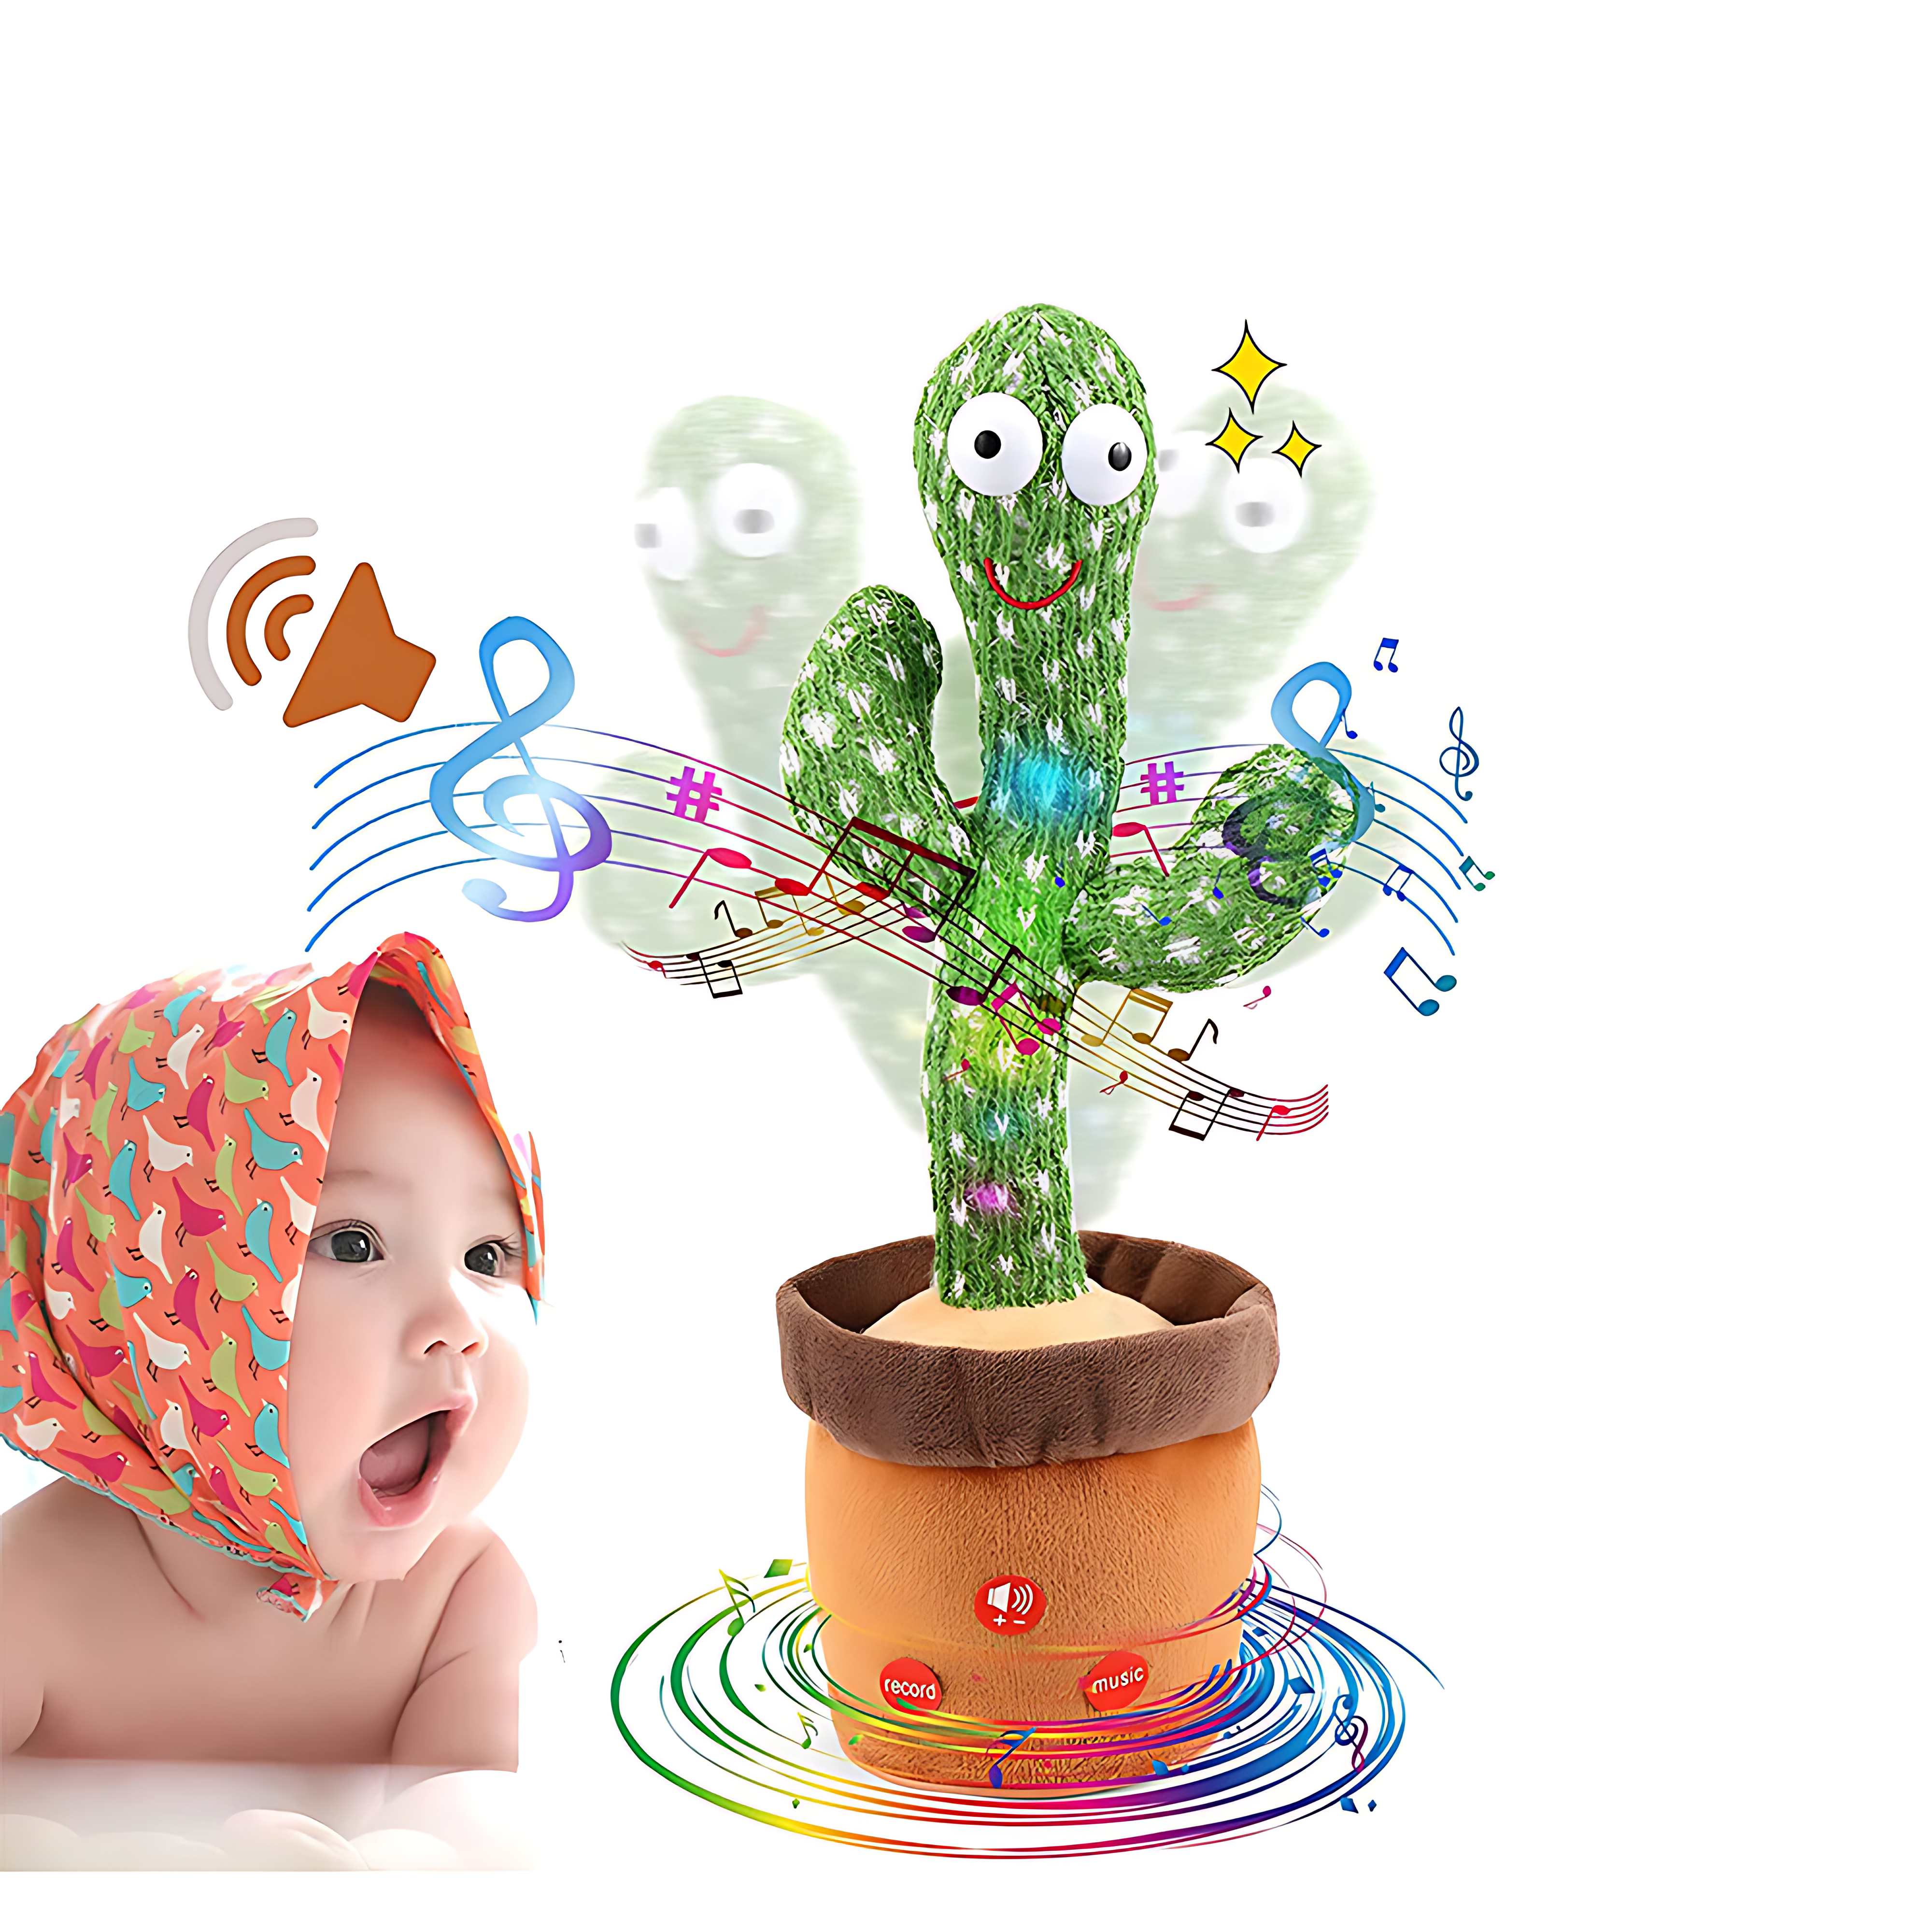 CactiBoogie - Ein interaktiver und lehrreicher Spielkamerad, bereit, dein Kind jeden Tag aufzuheitern!